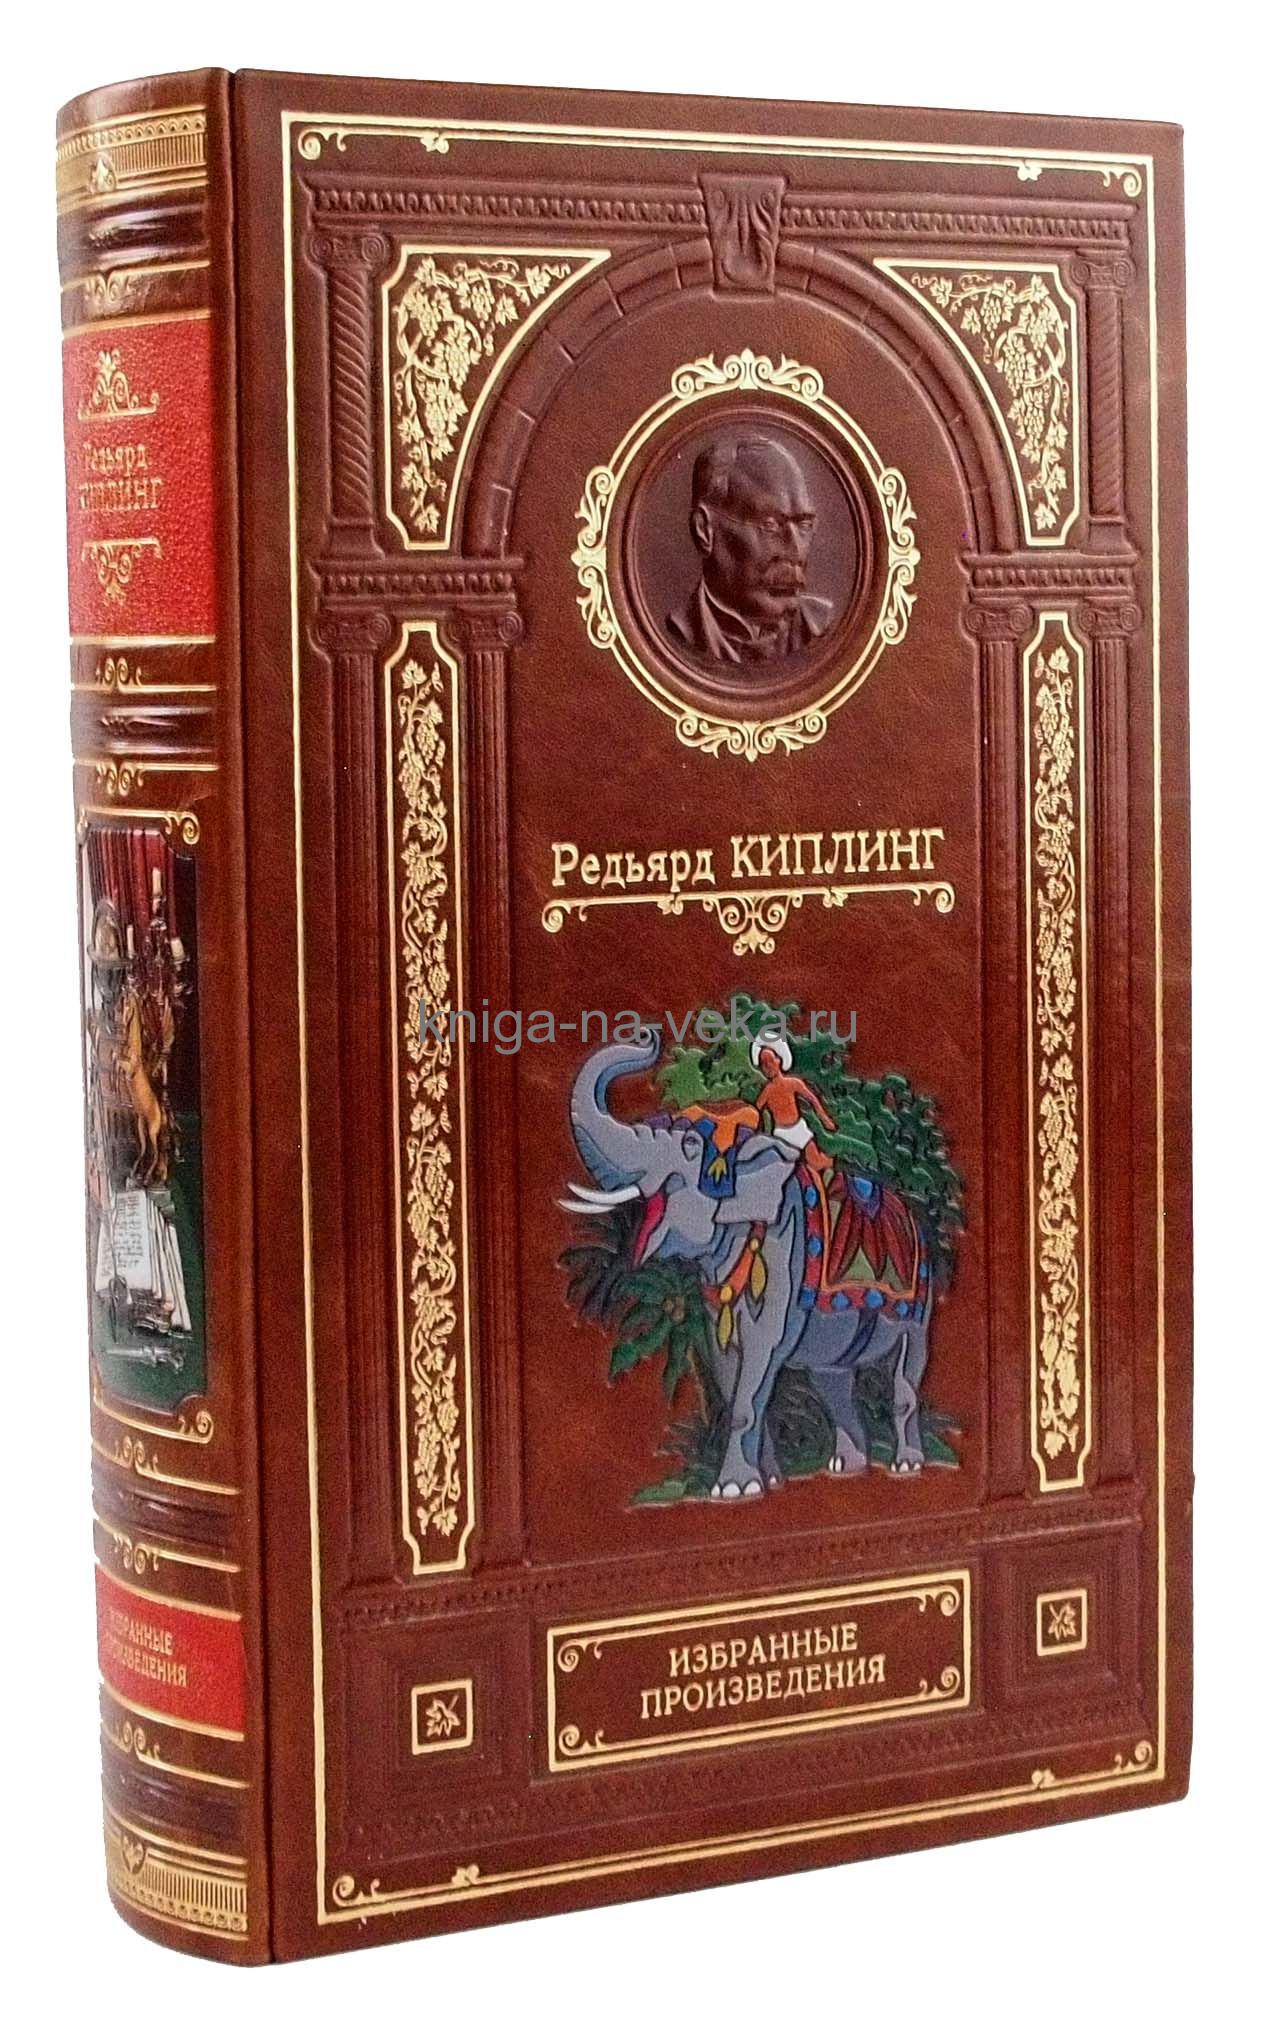 Подарочная кожаная книга Р. Киплинг "Избранные произведения"